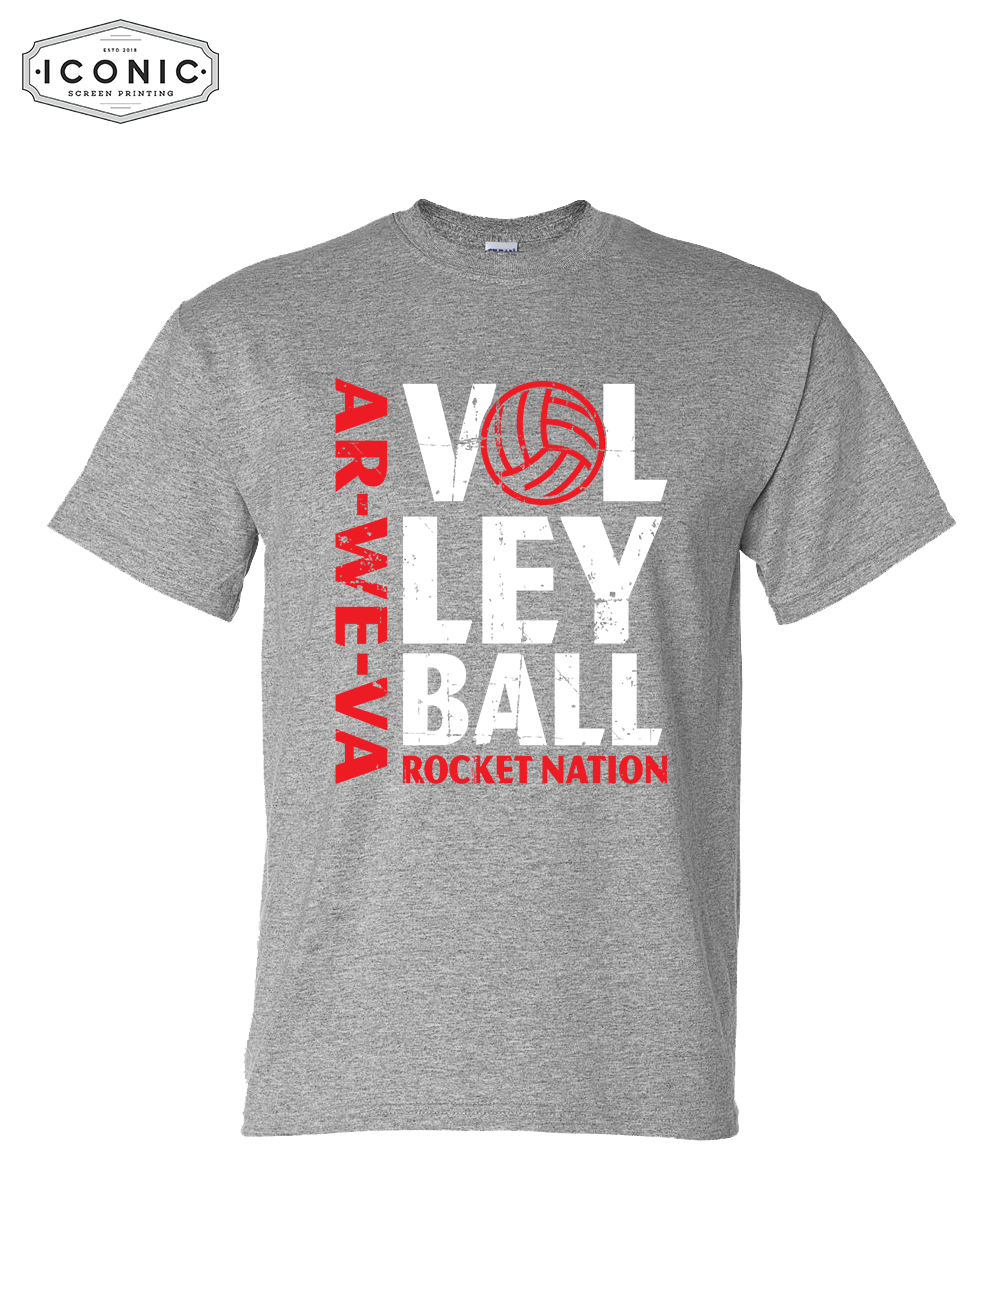 Rocket Nation Volleyball - DryBlend T-shirt